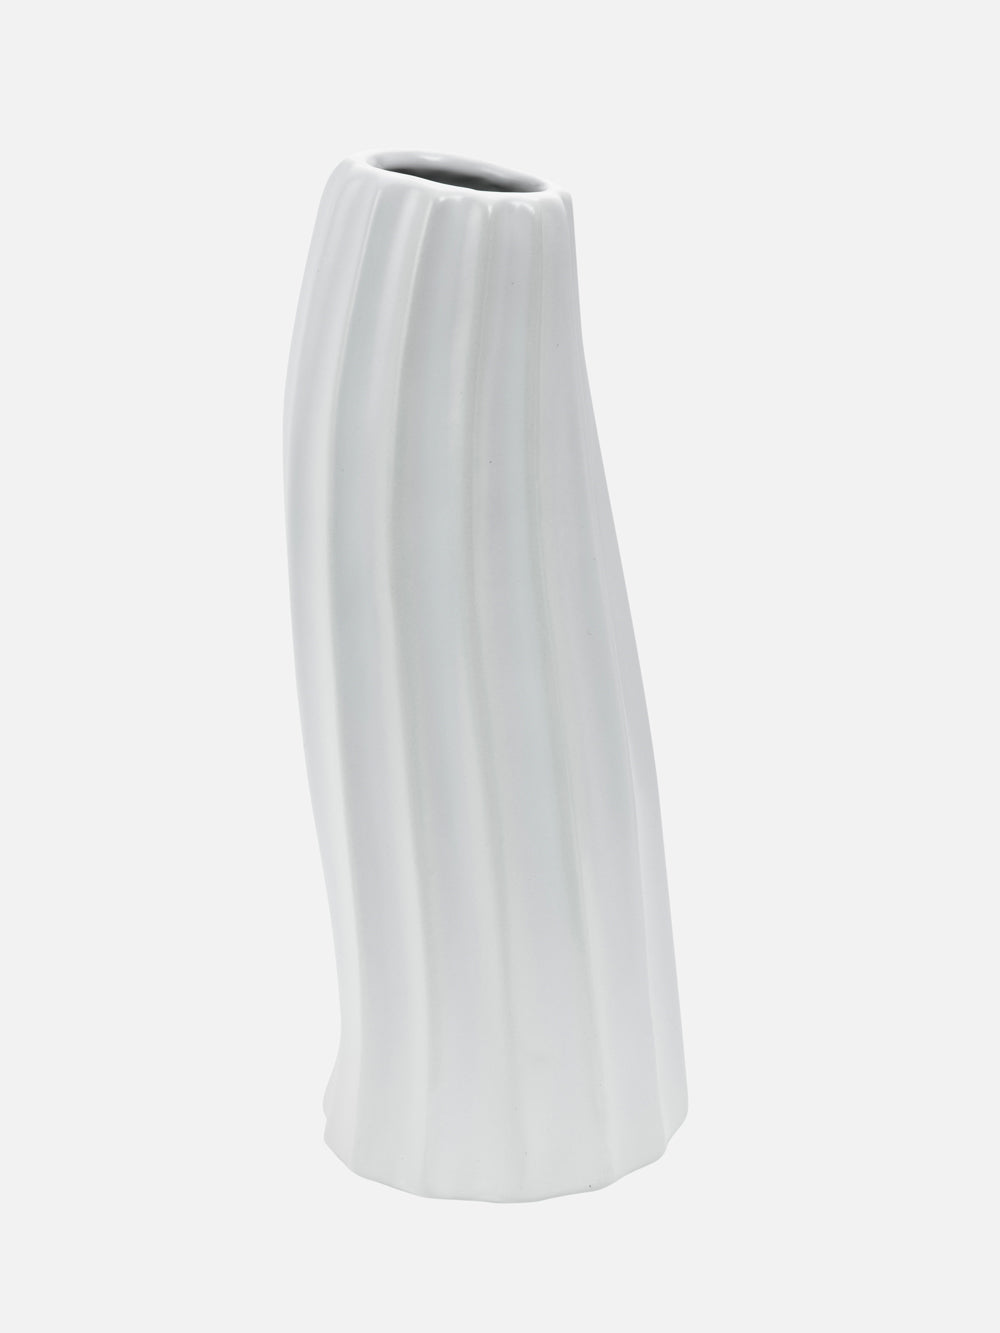 Zeus Ceramic Vase